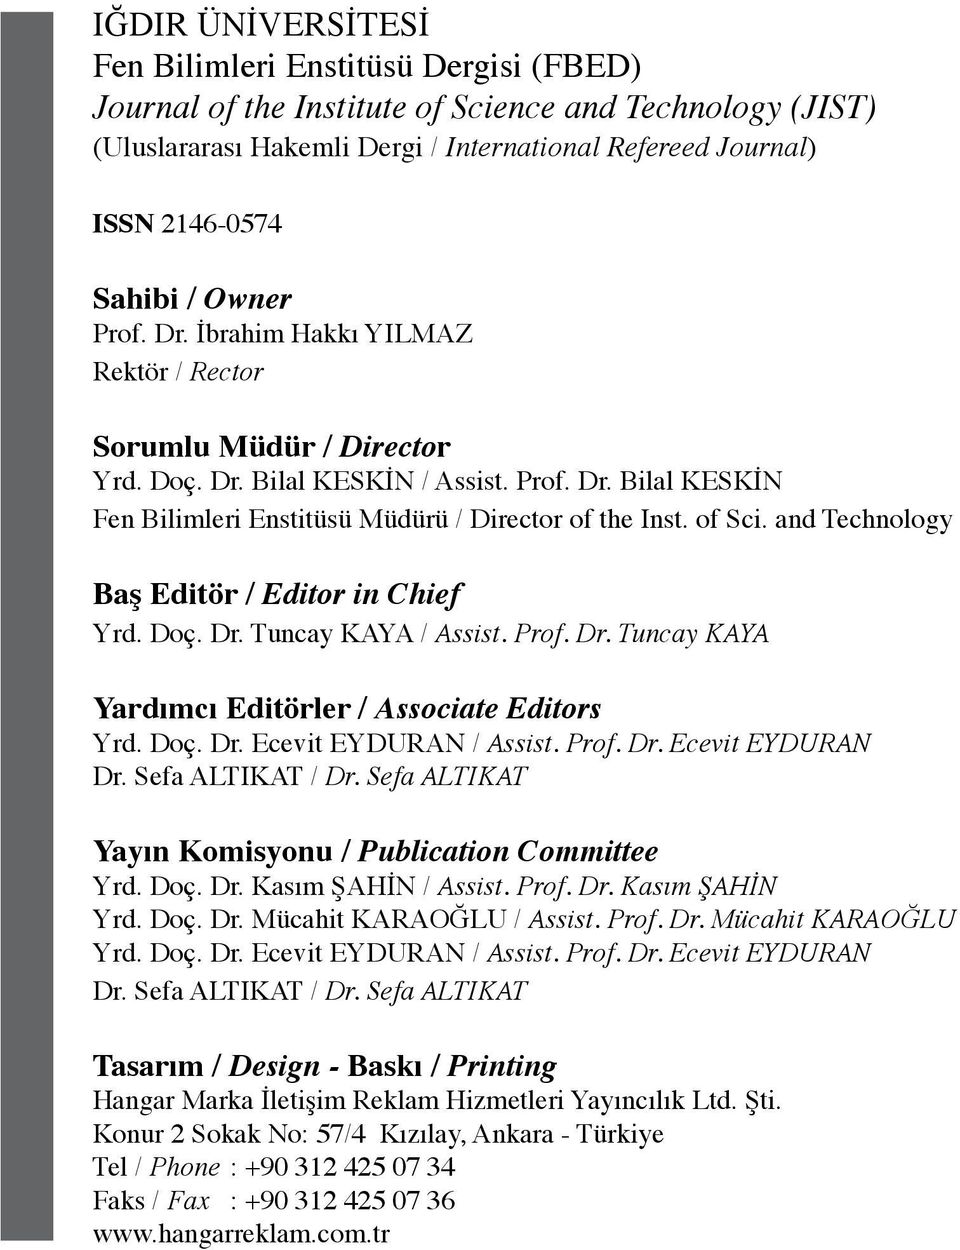 of Sci. and Technology Baş Editör / Editor in Chief Yrd. Doç. Dr. Tuncay KAYA / Assist. Prof. Dr. Tuncay KAYA Yardımcı Editörler / Associate Editors Yrd. Doç. Dr. Ecevit EYDURAN / Assist. Prof. Dr. Ecevit EYDURAN Dr.